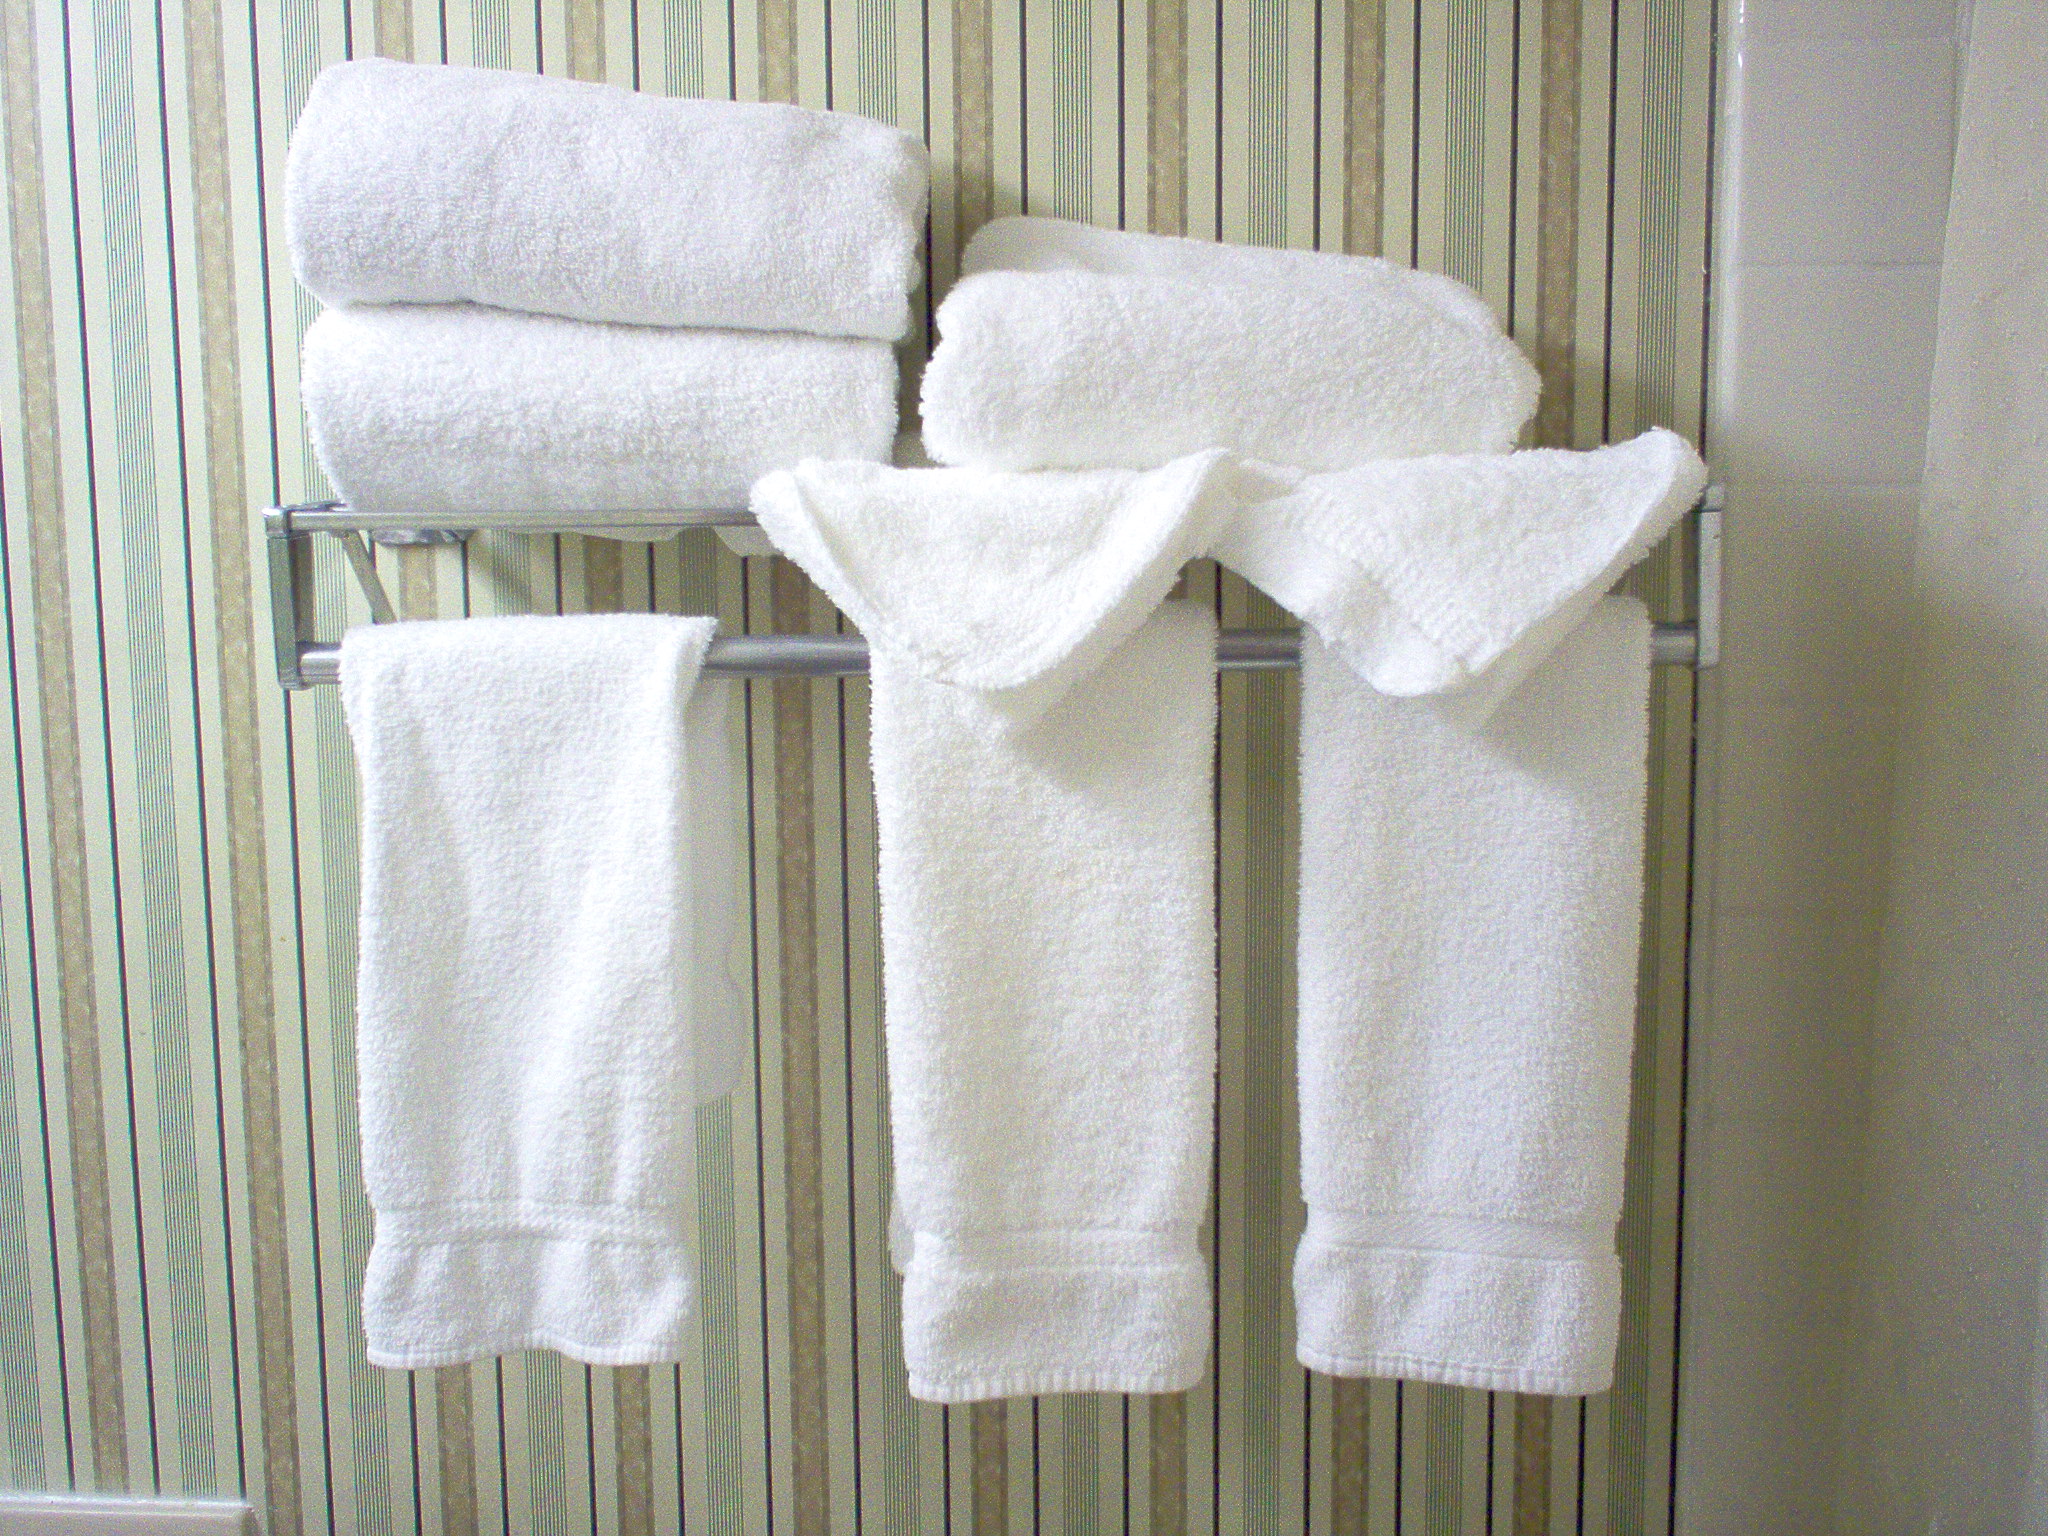 Купить полотенце сложение. Полотенца в отеле. Полотенца в ванной. Полотенца в гостиничном номере. Номера на полотенца.